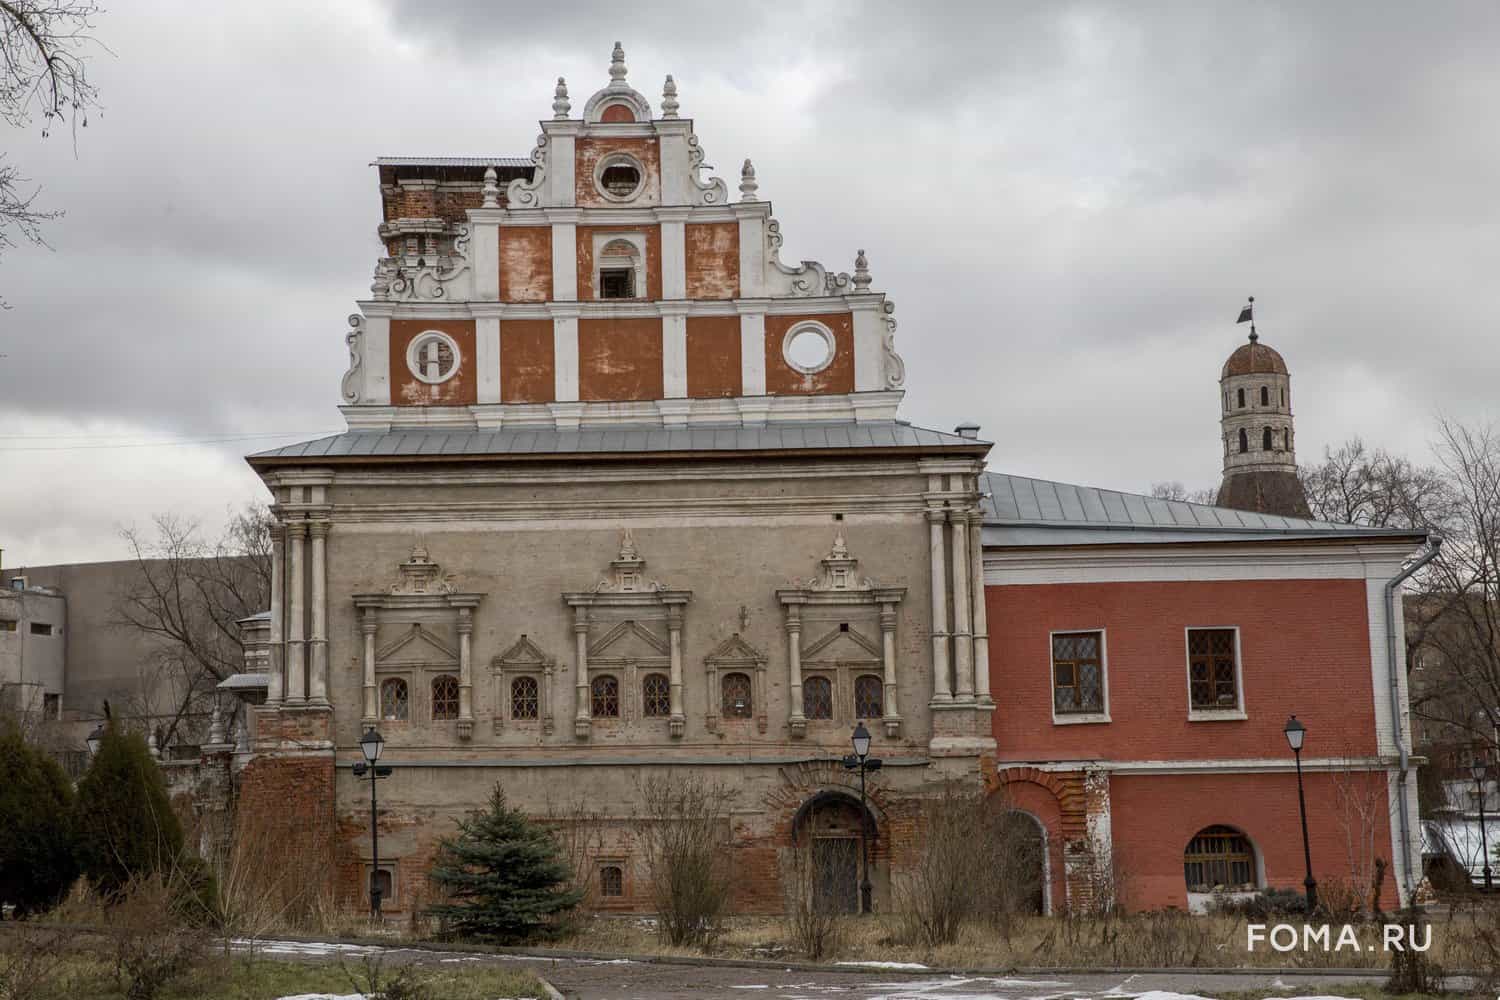 Трагические закоулки Москвы: здесь утопилась бедная Лиза, взорвали монастырь, а на месте храма построили ДК